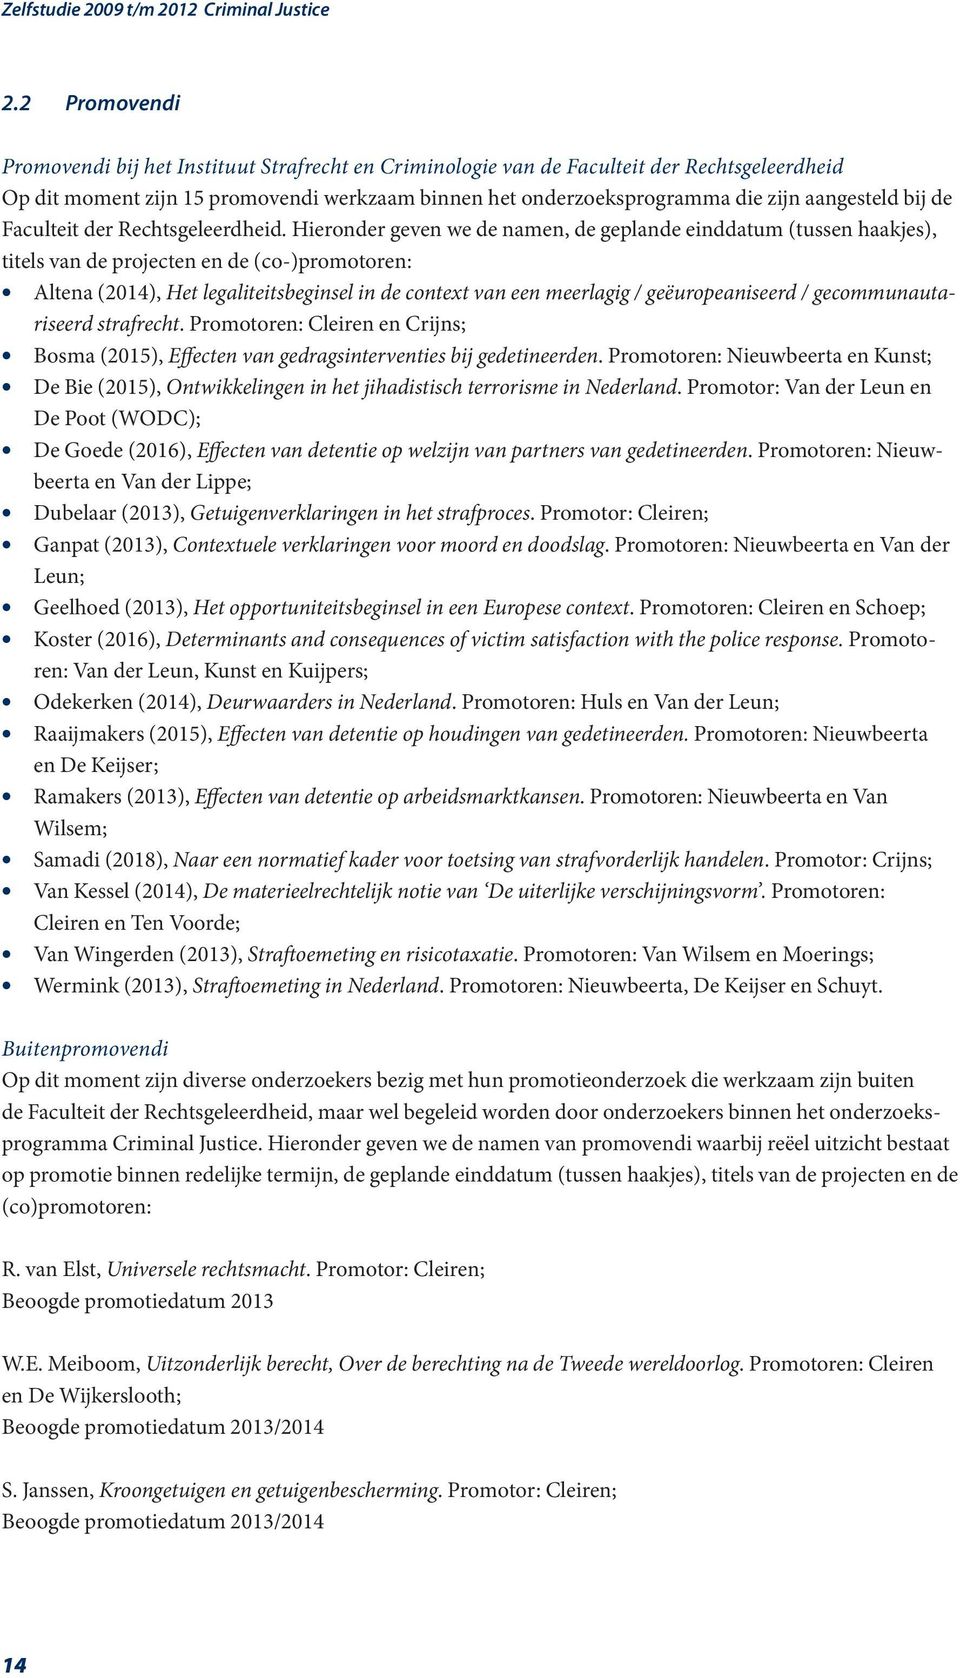 Hieronder geven we de namen, de geplande einddatum (tussen haakjes), titels van de projecten en de (co-)promotoren: Altena (2014), Het legaliteitsbeginsel in de context van een meerlagig /